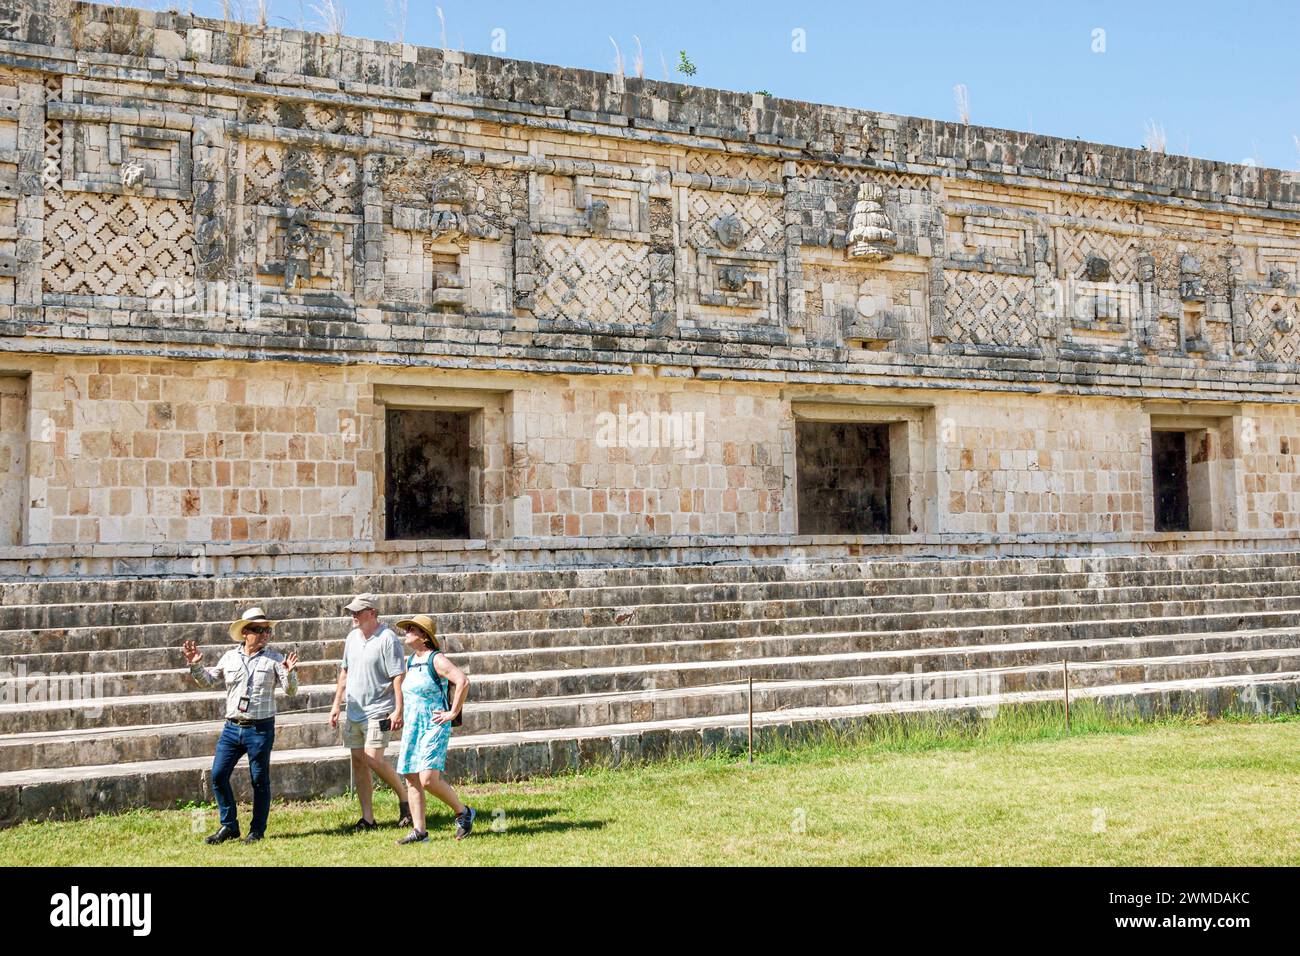 Merida Mexique, Puuc style Uxmal site archéologique, Zona Arqueologica de Uxmal, calcaire classique de la ville maya, visiteurs homme homme masculin, femme femme femme dame Banque D'Images